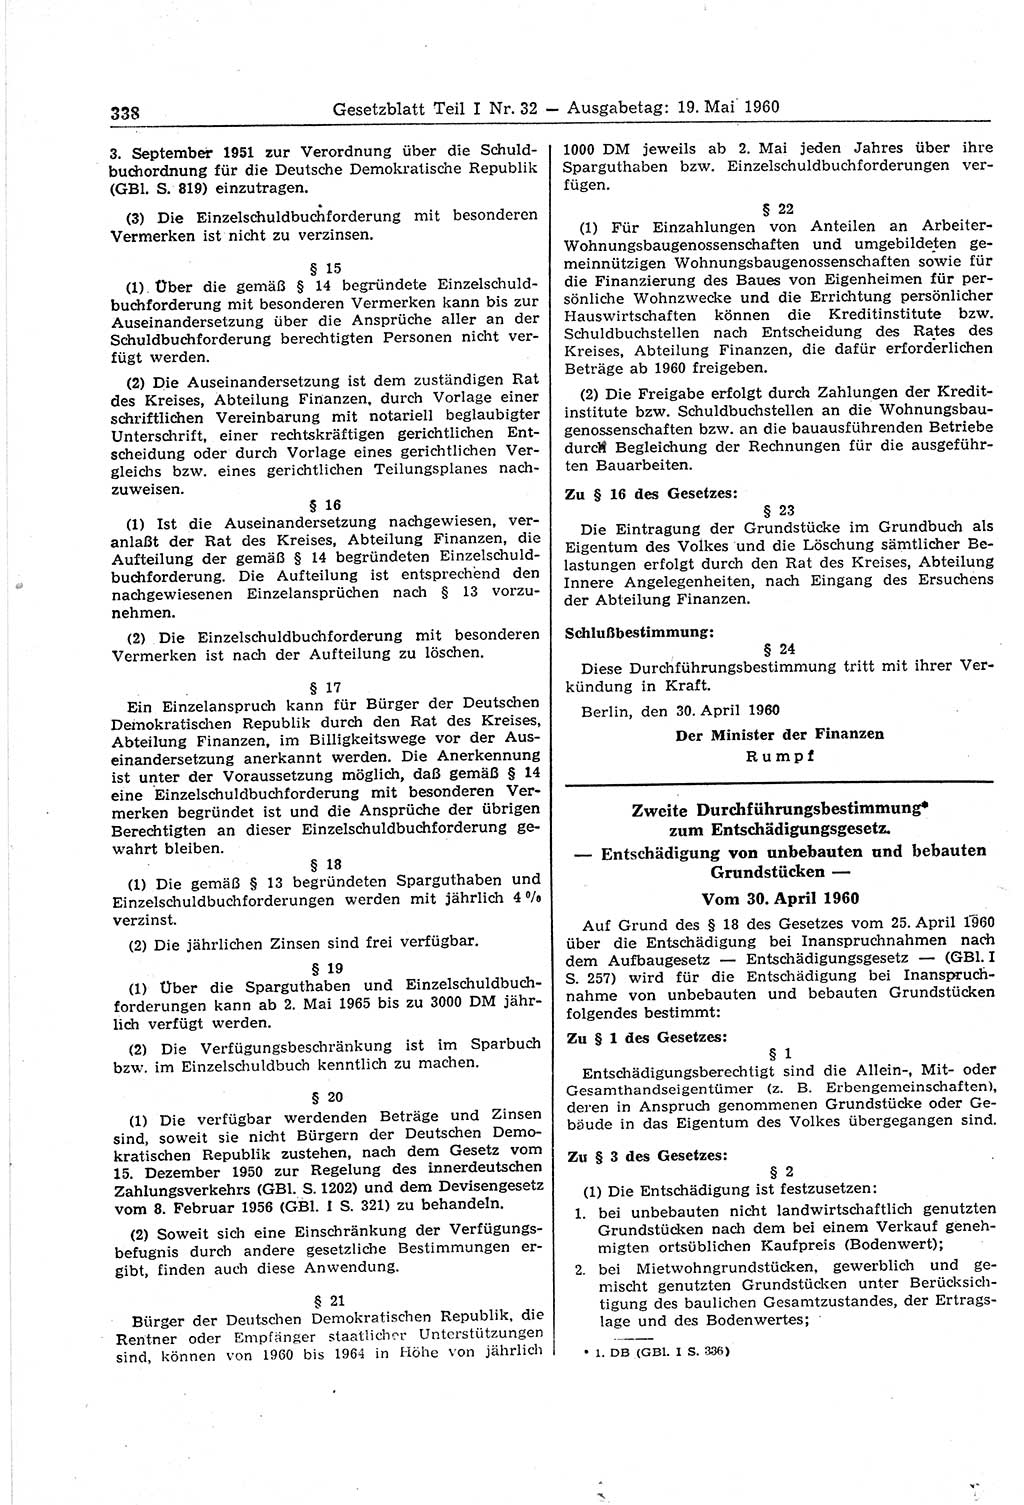 Gesetzblatt (GBl.) der Deutschen Demokratischen Republik (DDR) Teil Ⅰ 1960, Seite 338 (GBl. DDR Ⅰ 1960, S. 338)